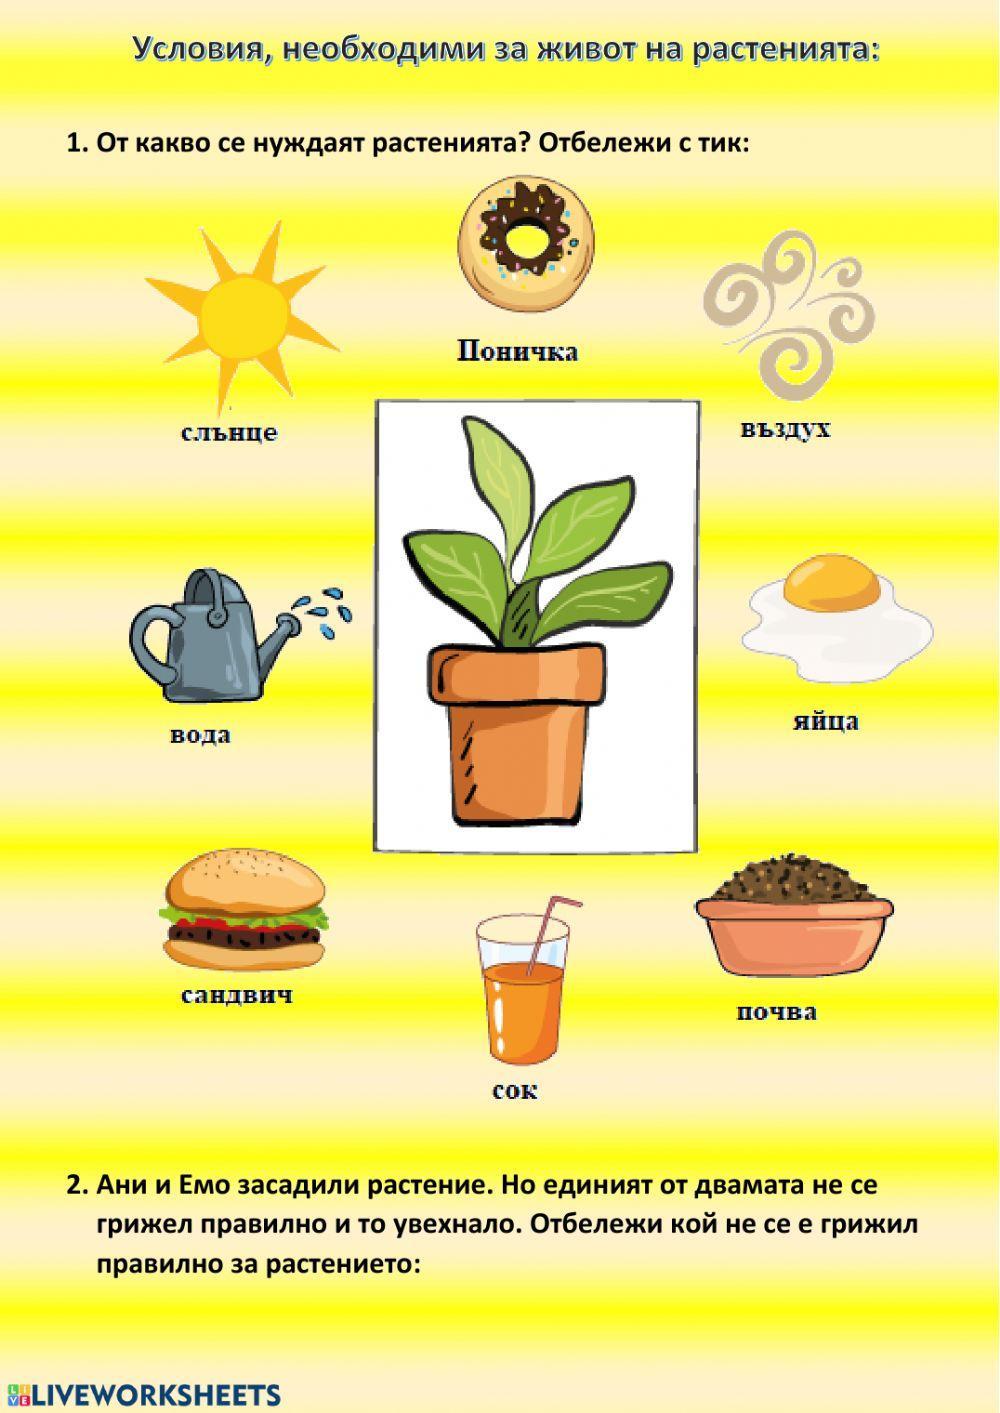 Условия за живот на растенията